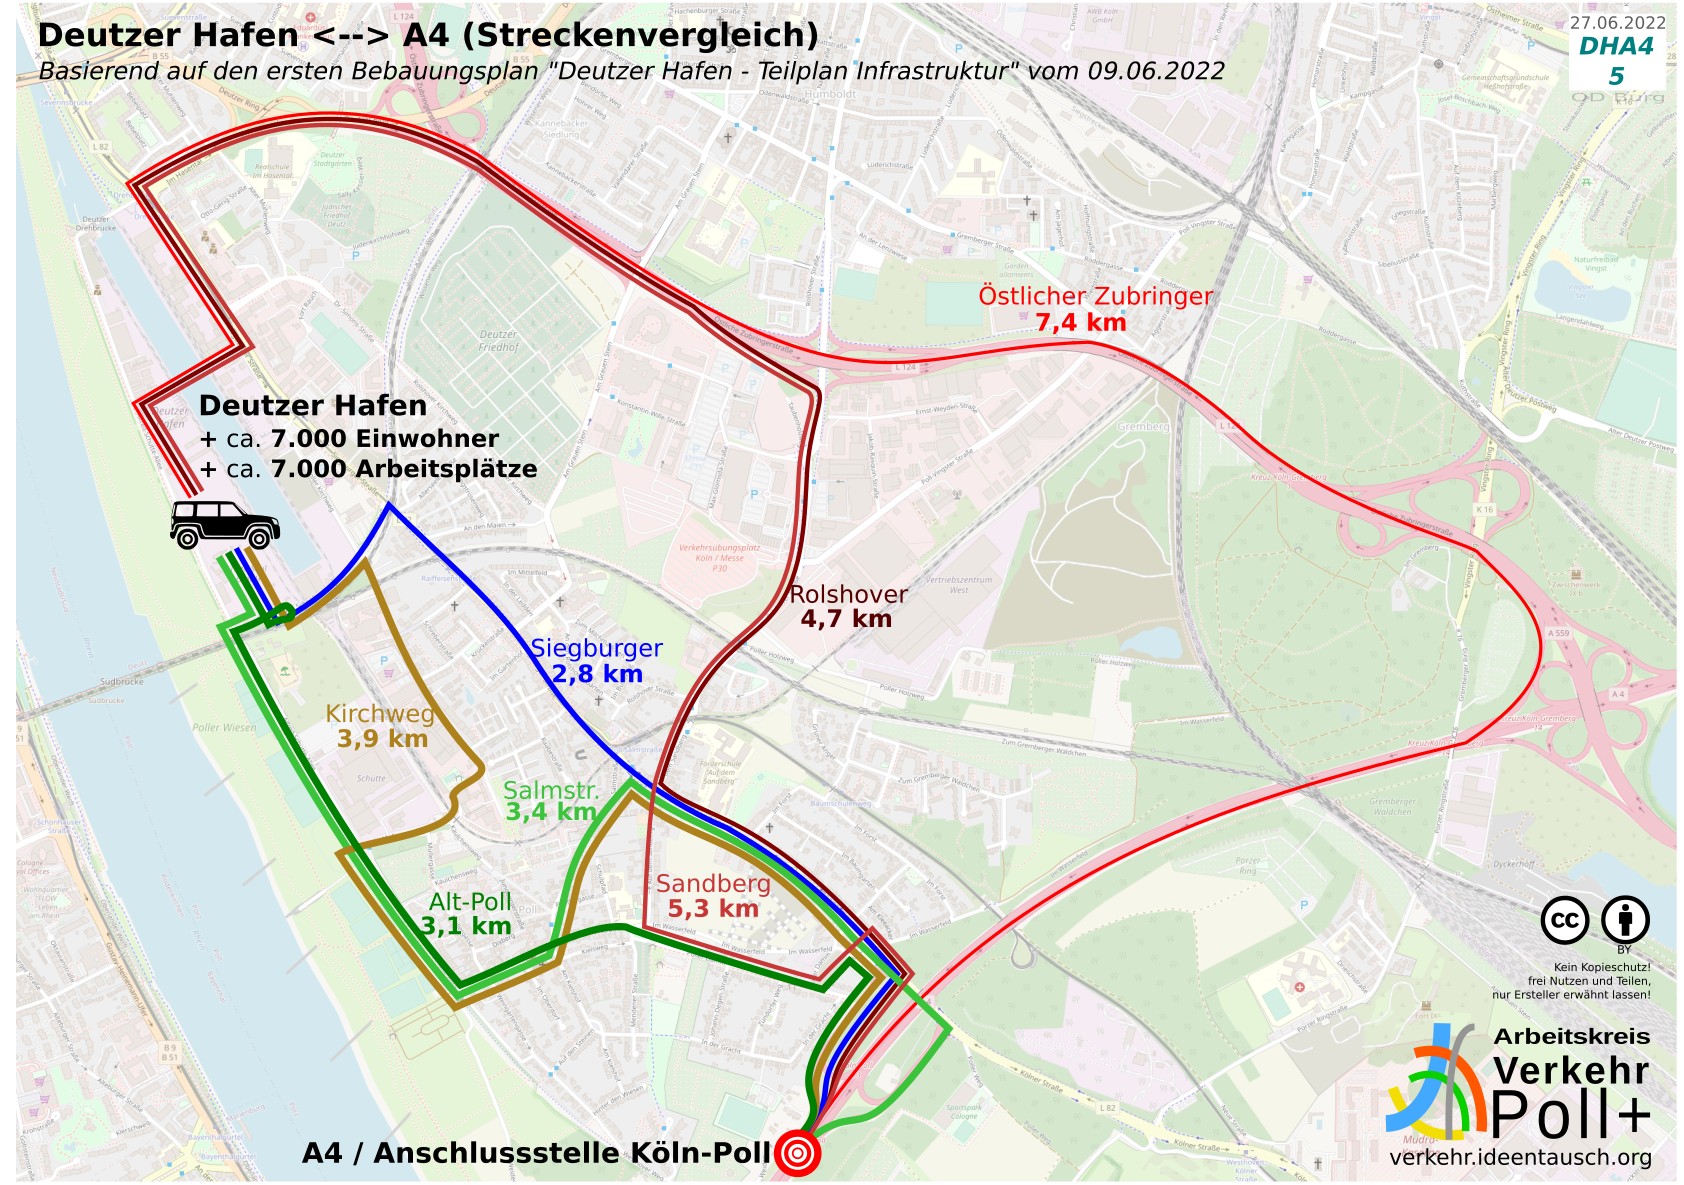 Vergleich der verschiedenen Strecken zwischen Deutzer Hafen und der Autobahn-Anschlussstelle Poll bzw. umgekehrt, basierend auf dem ersten Bebauungsplan "Deutzer Hafen - Teilplan Infrastruktur" vom 09.06.2022. Streckenvergleich: 7,4 km über den Östlichen Zubringer, 4,7 km über die Rolshover Straße, 5,3 km Rolshover+Sandberg, 3,4 km Salmstraße, 3,9 km Poller Kirchweg, 3,1 km Alt-Poll (Poller Hauptstraße), 2,8 km Siegburger Straße. Quelle: verkehr.ideentausch.org Arbeitskreis Verkehr Poll+ DHA4 5 27.06.2022 OD Burg BY Kein Kopieschutz! frei Nutzen und Teilen, nur Ersteller erwähnt lassen!